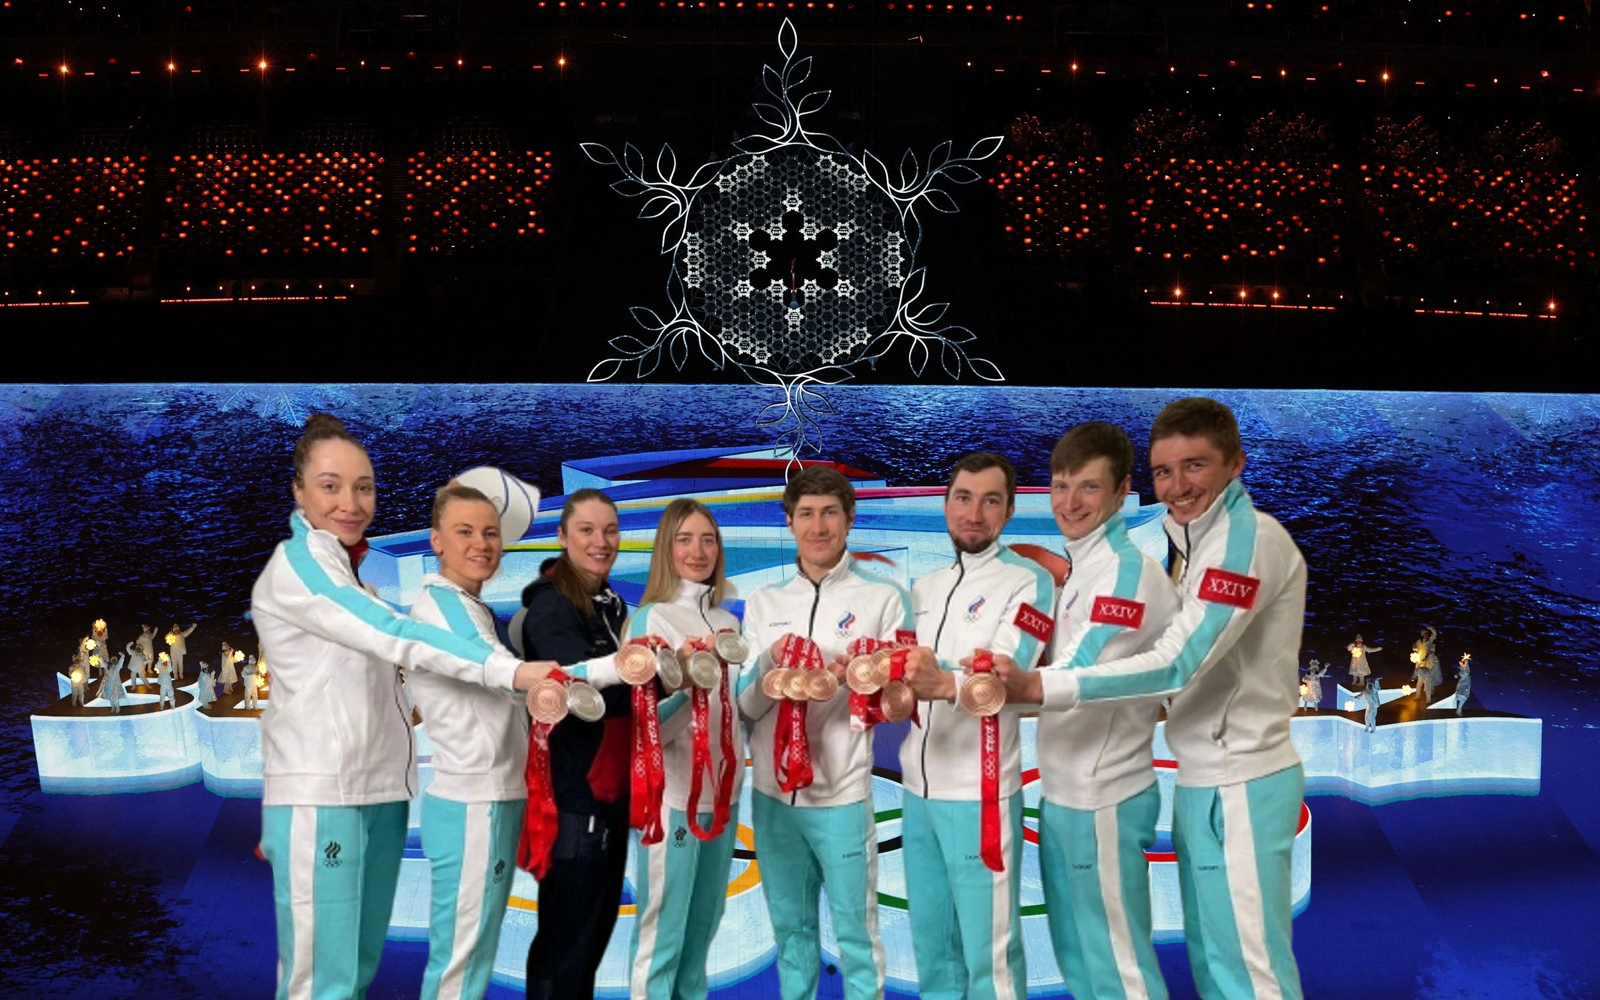 Итоги игр в Пекине: российские спортсмены в очередной раз стали жертвой политической аферы